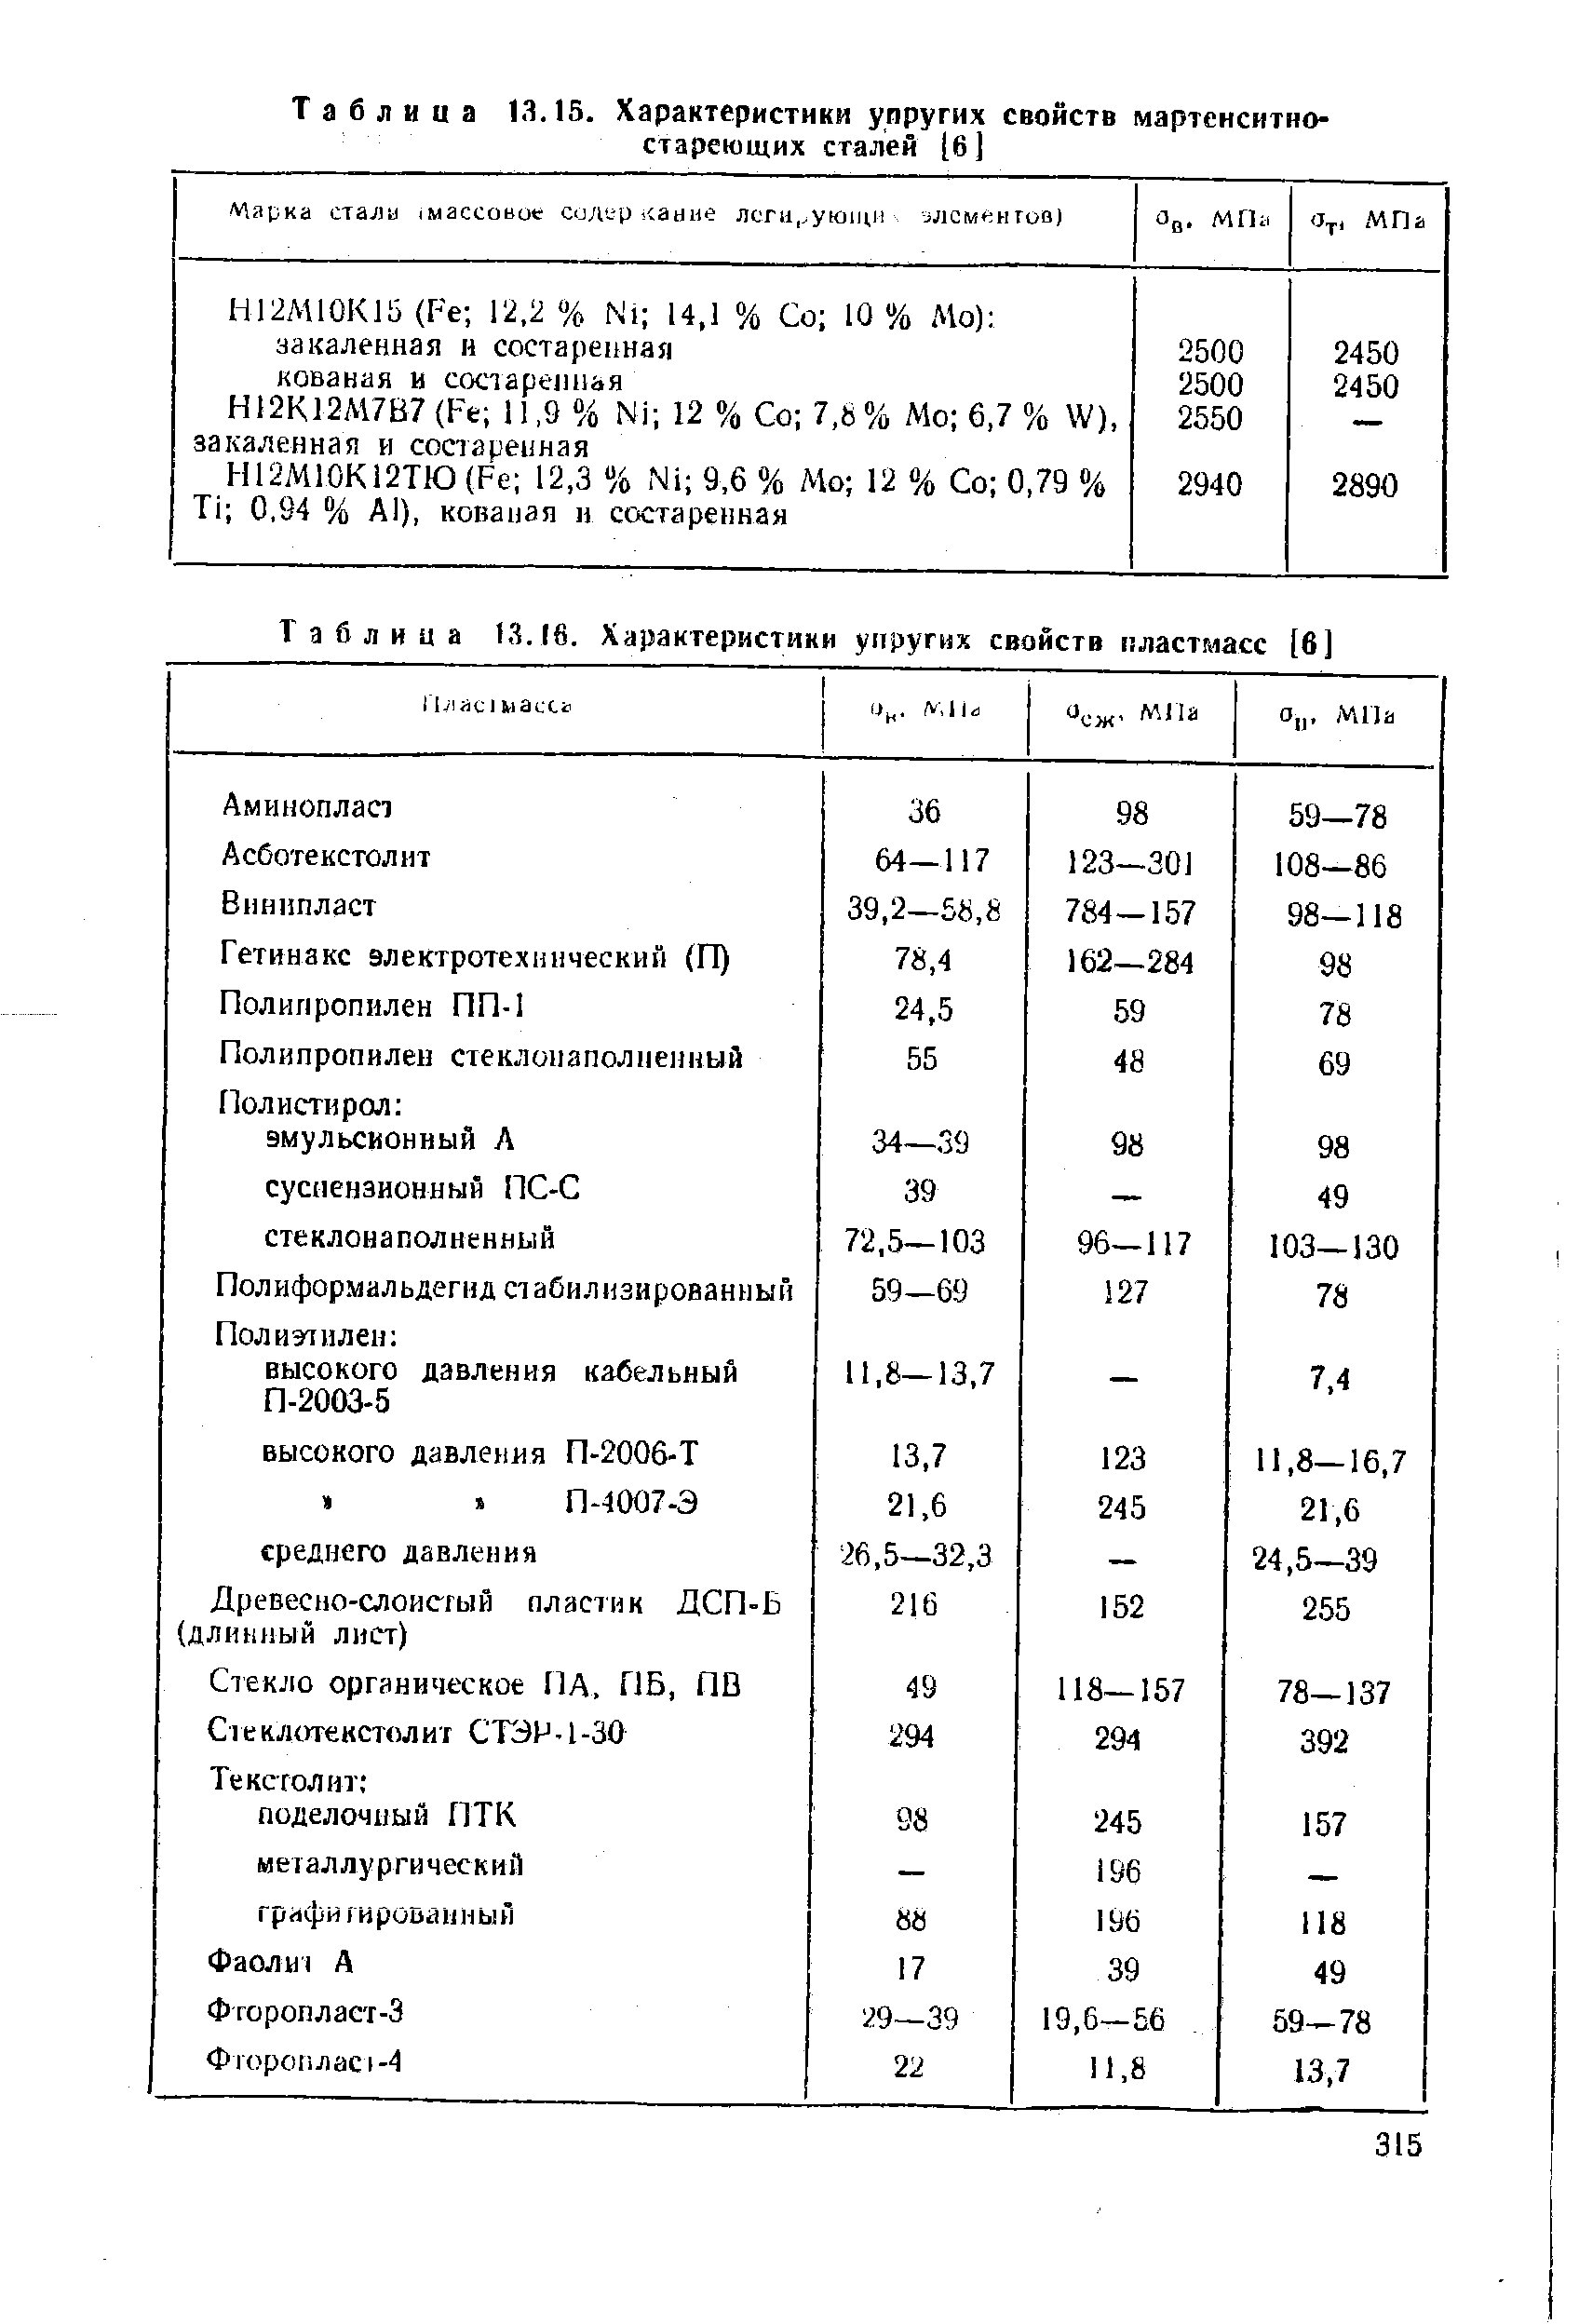 Таблица 13.16. Характеристики уиругих свойств пластмасс [6]
